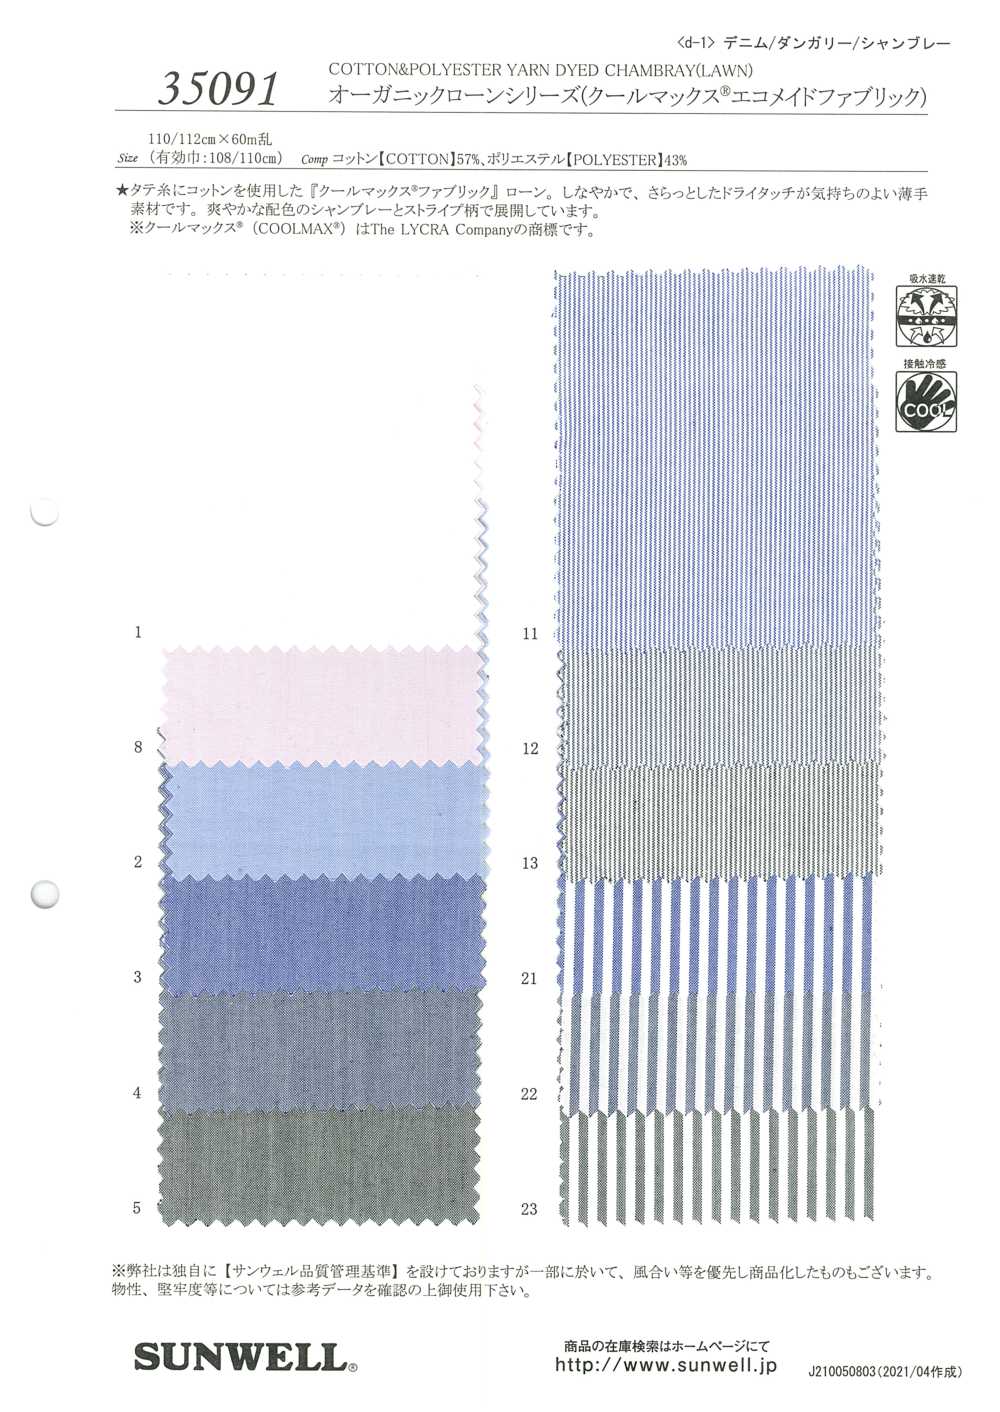 35091 Série Orgânica Gramado (Coolmax (R) Tecido Eco-made)[Têxtil / Tecido] SUNWELL